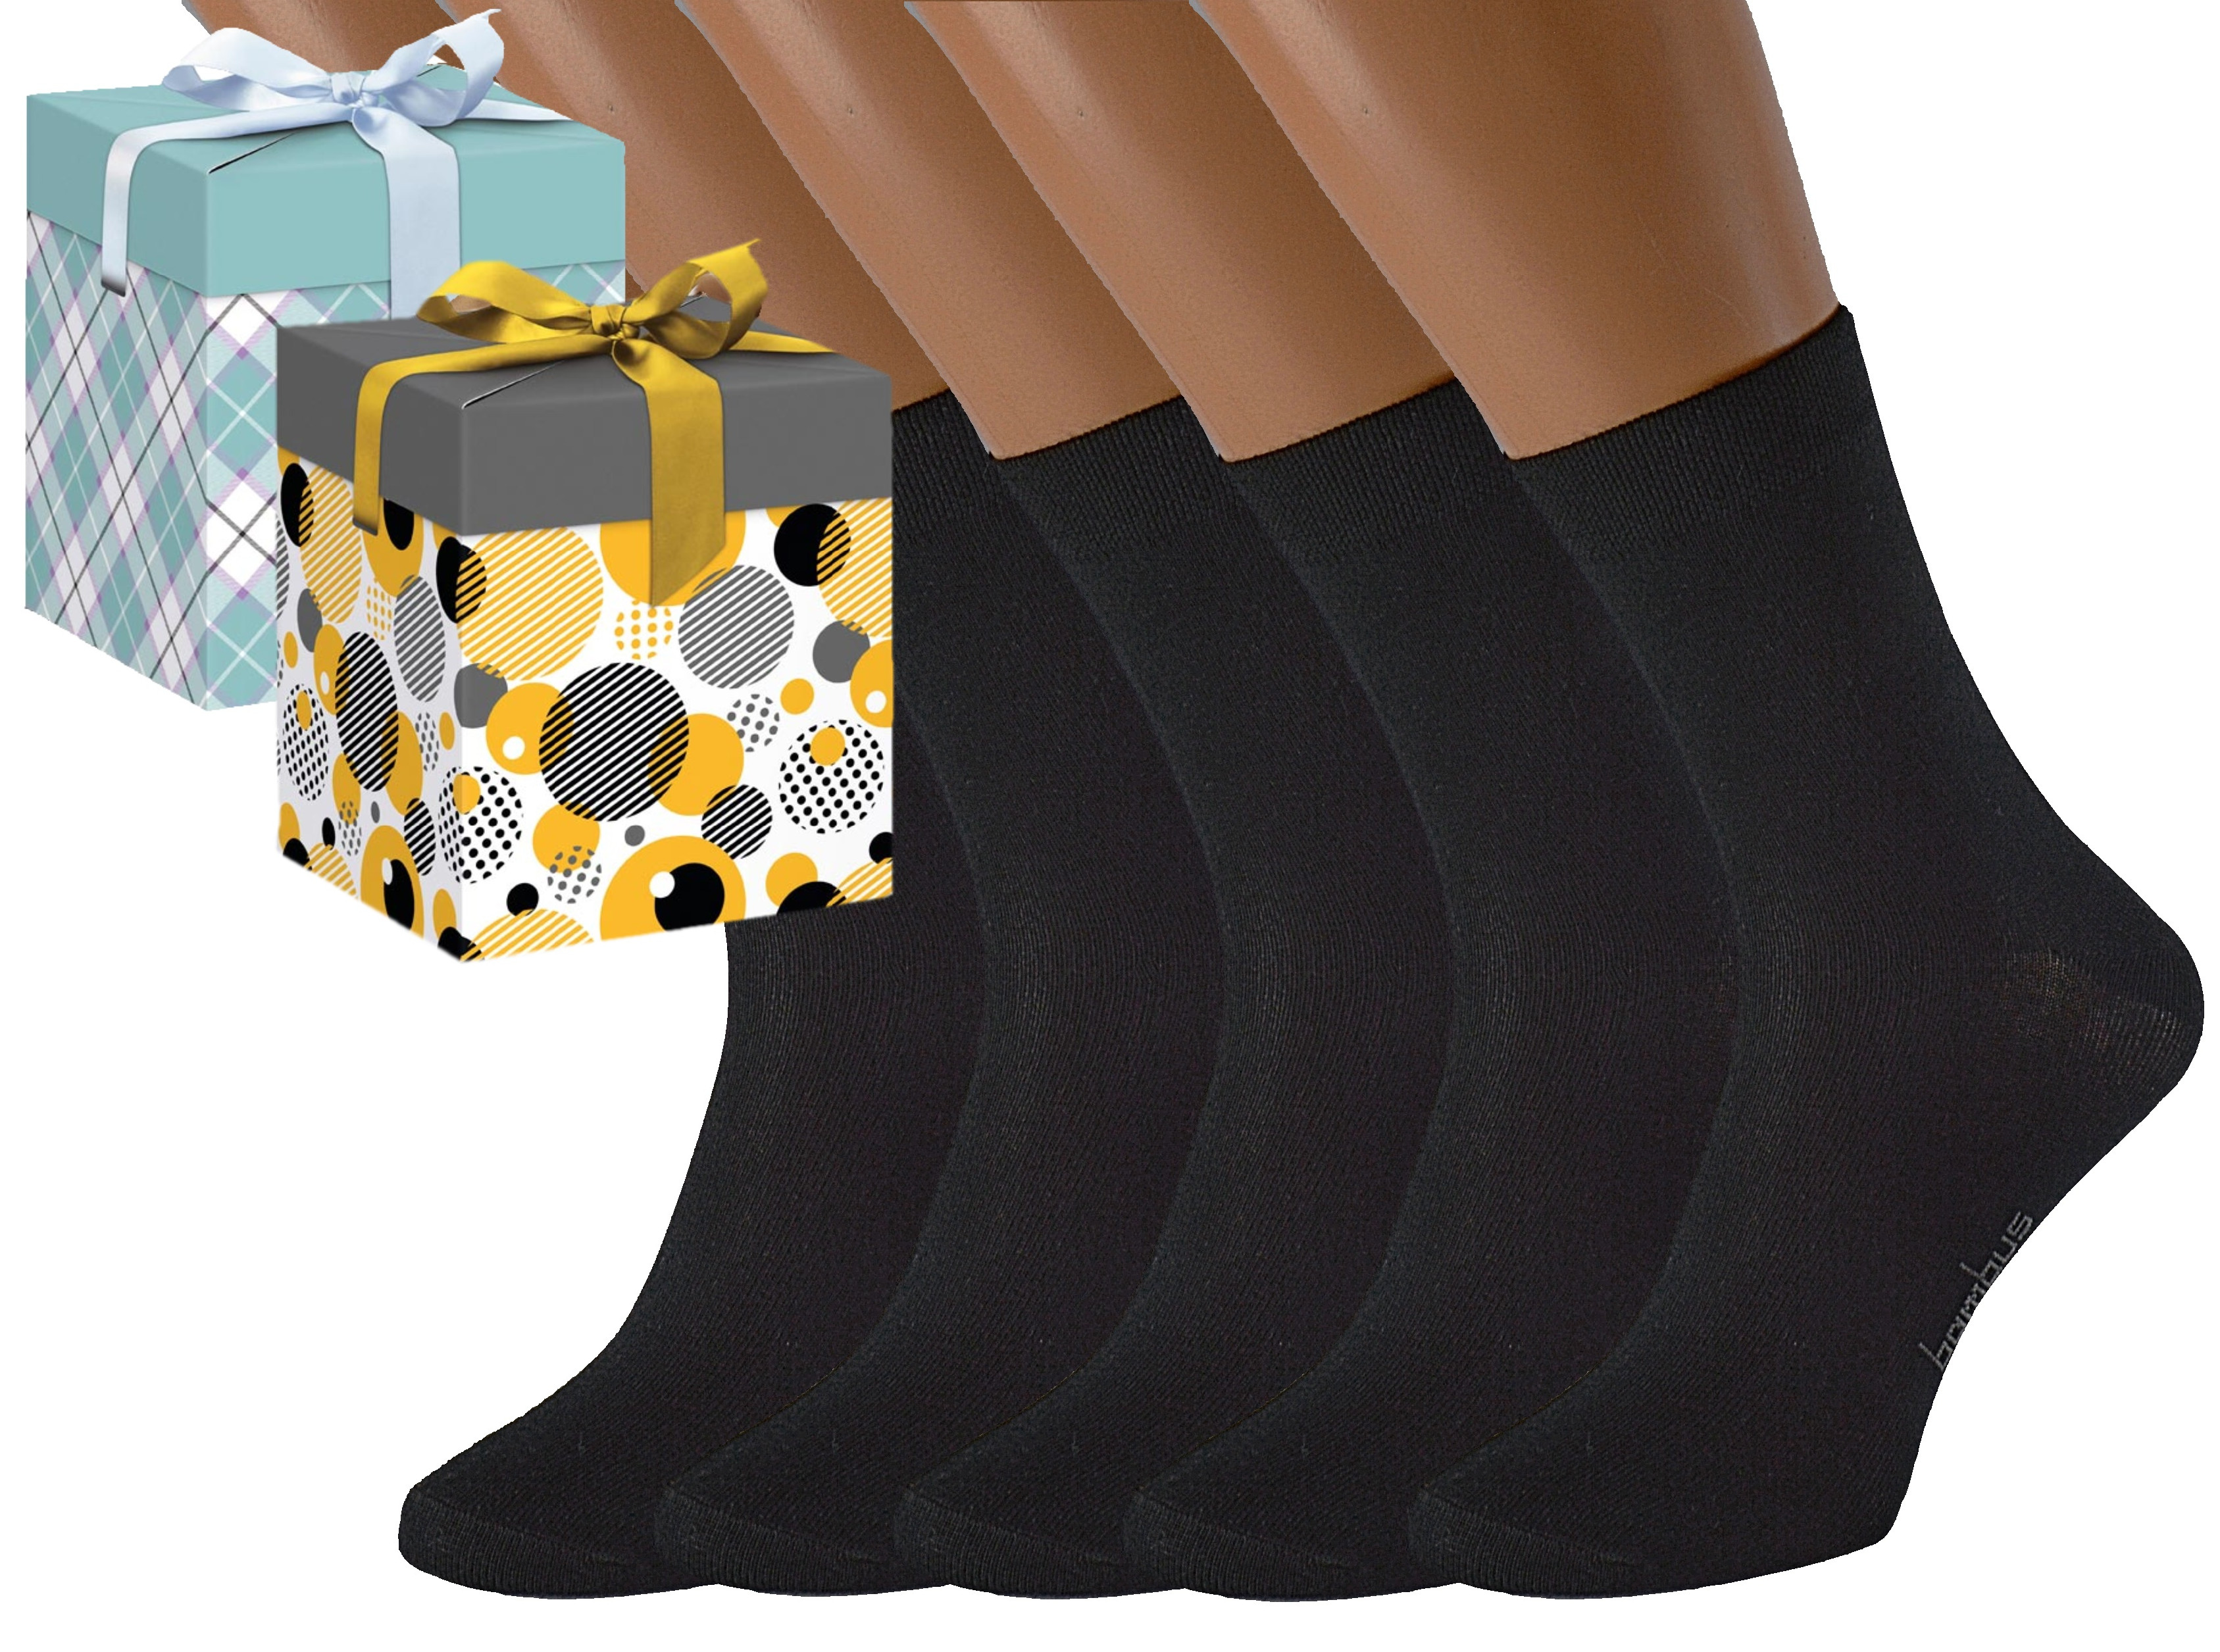 Produkt Dárkové balení 5 párů bambusových ponožek BAMBOO Barva: Černé, Velikost: EUR 35-38 (UK 3-5), Zvolte variantu dárkového balení: Mint kostkovaná